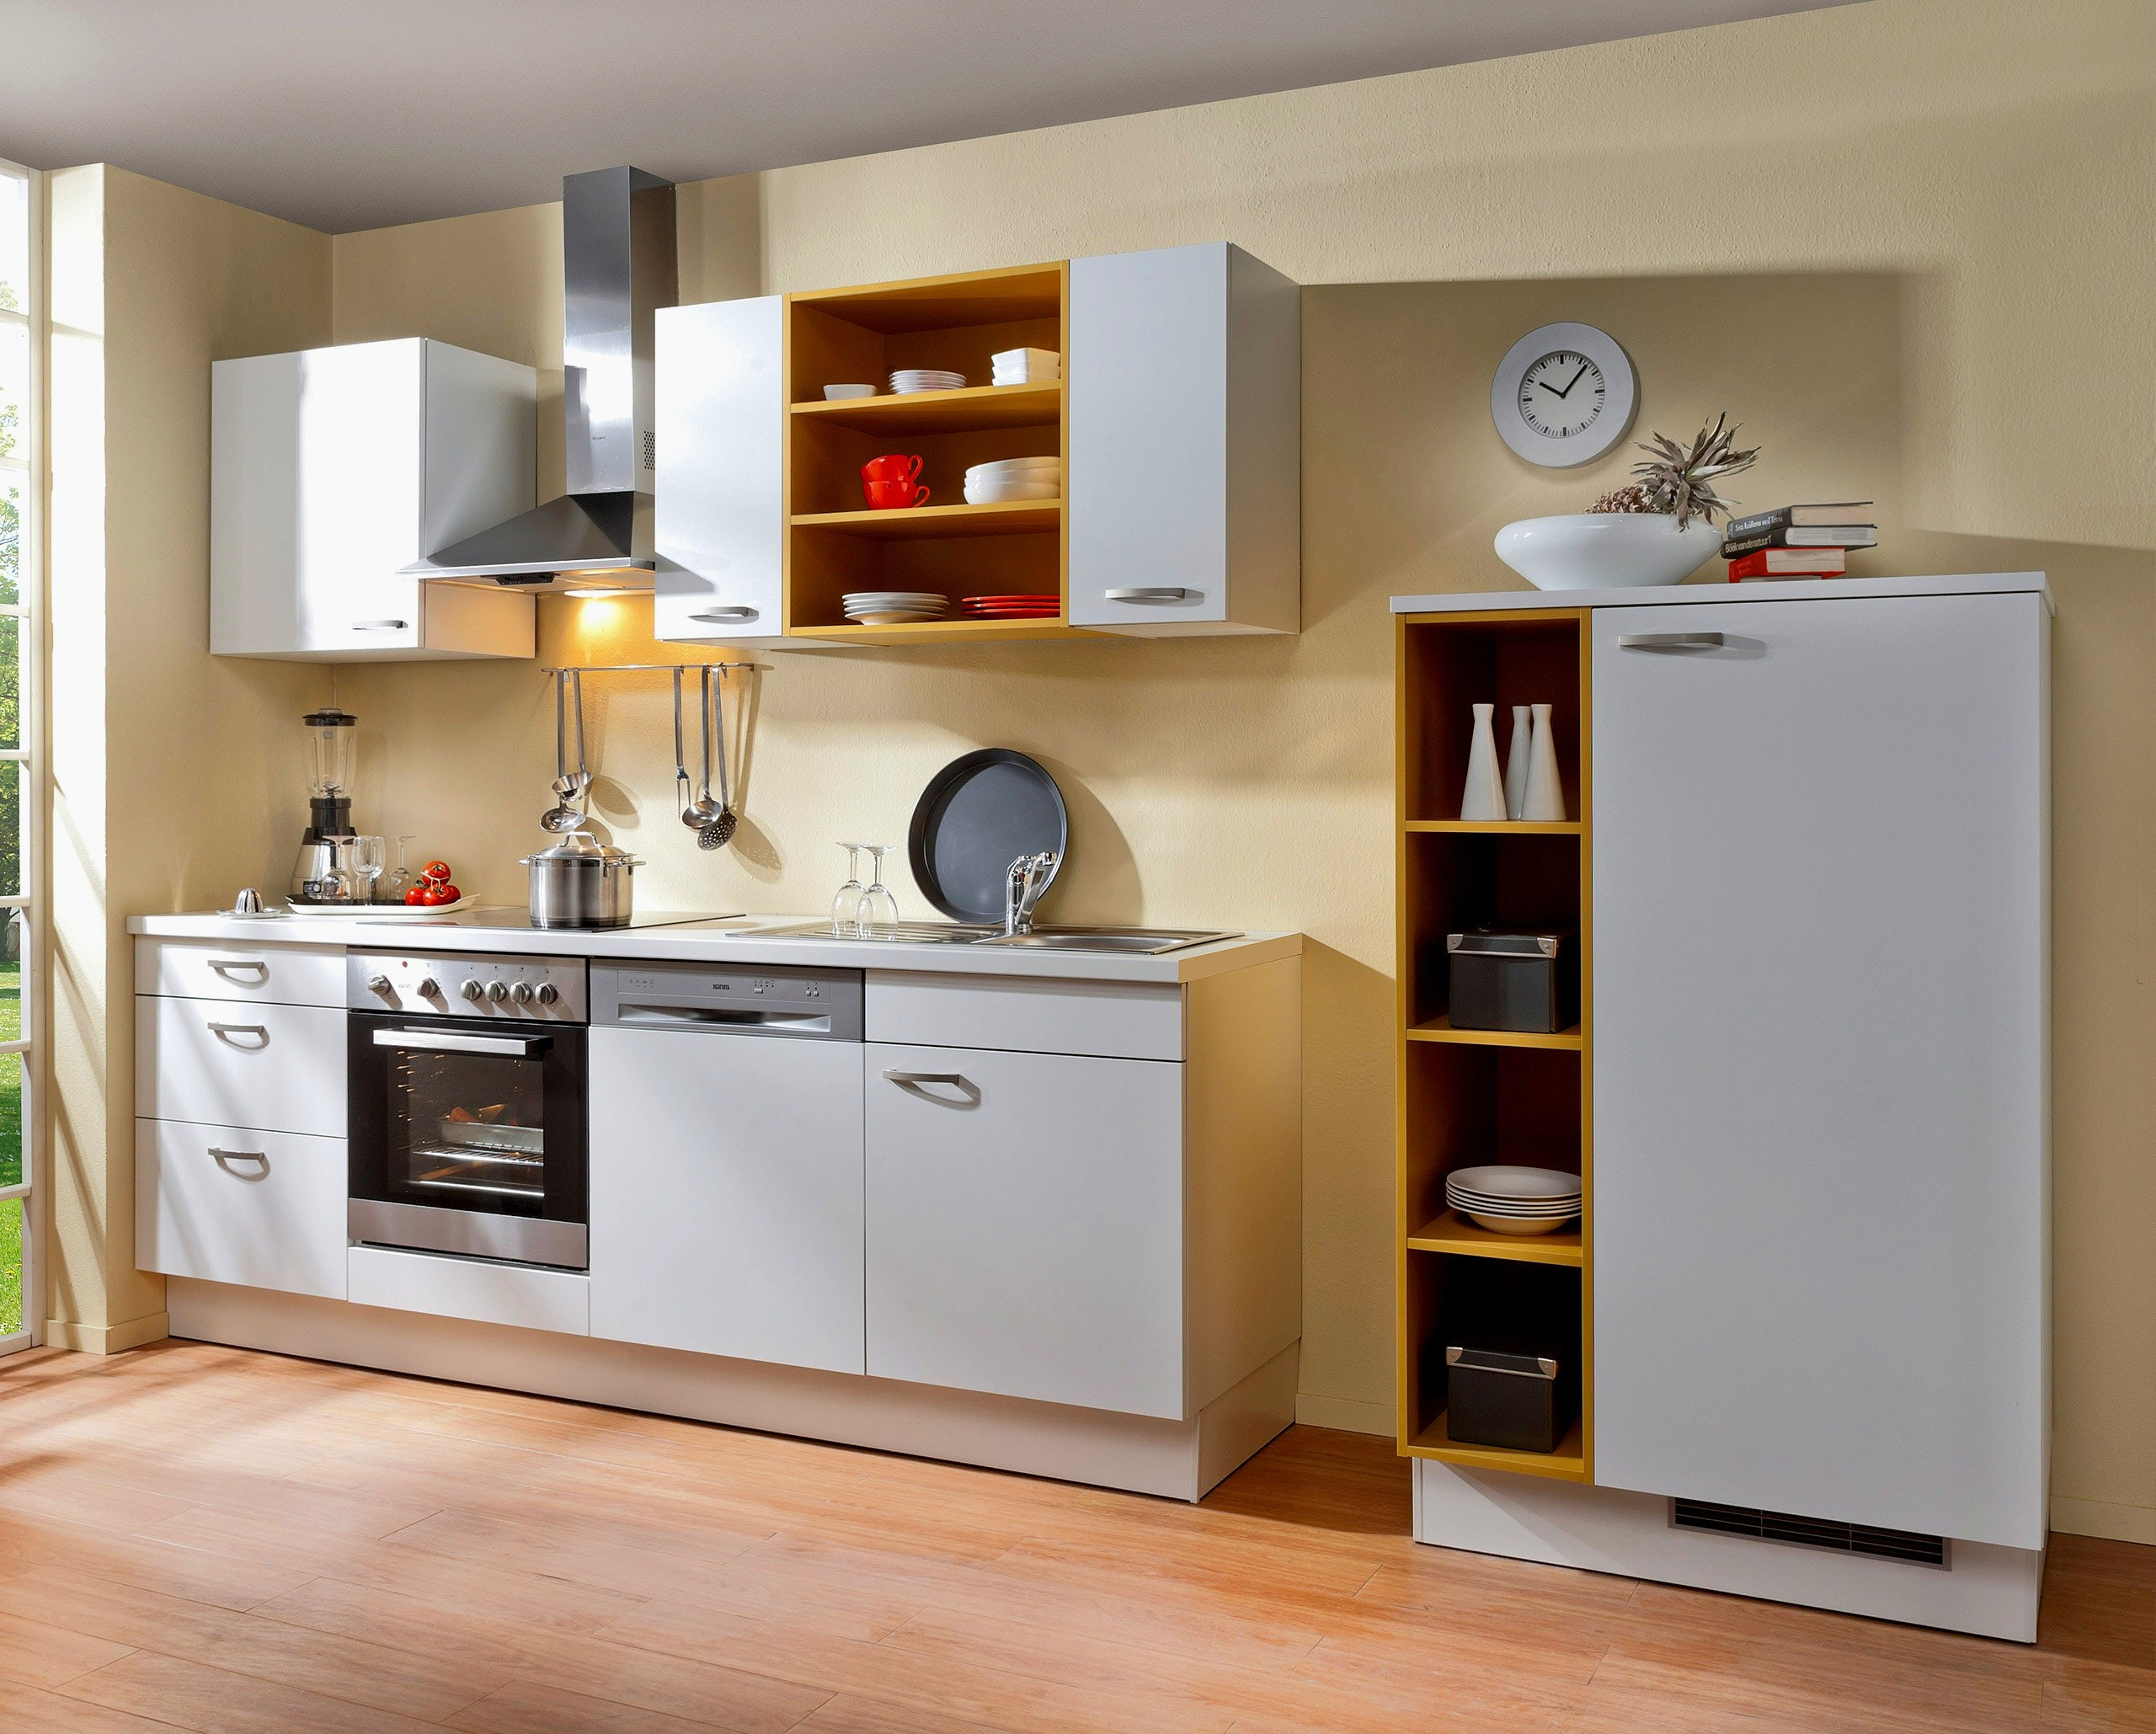 Küchenzeile Mit Elektrogeräten Günstig
 Küchenzeile Mit Elektrogeräten 230 Cm